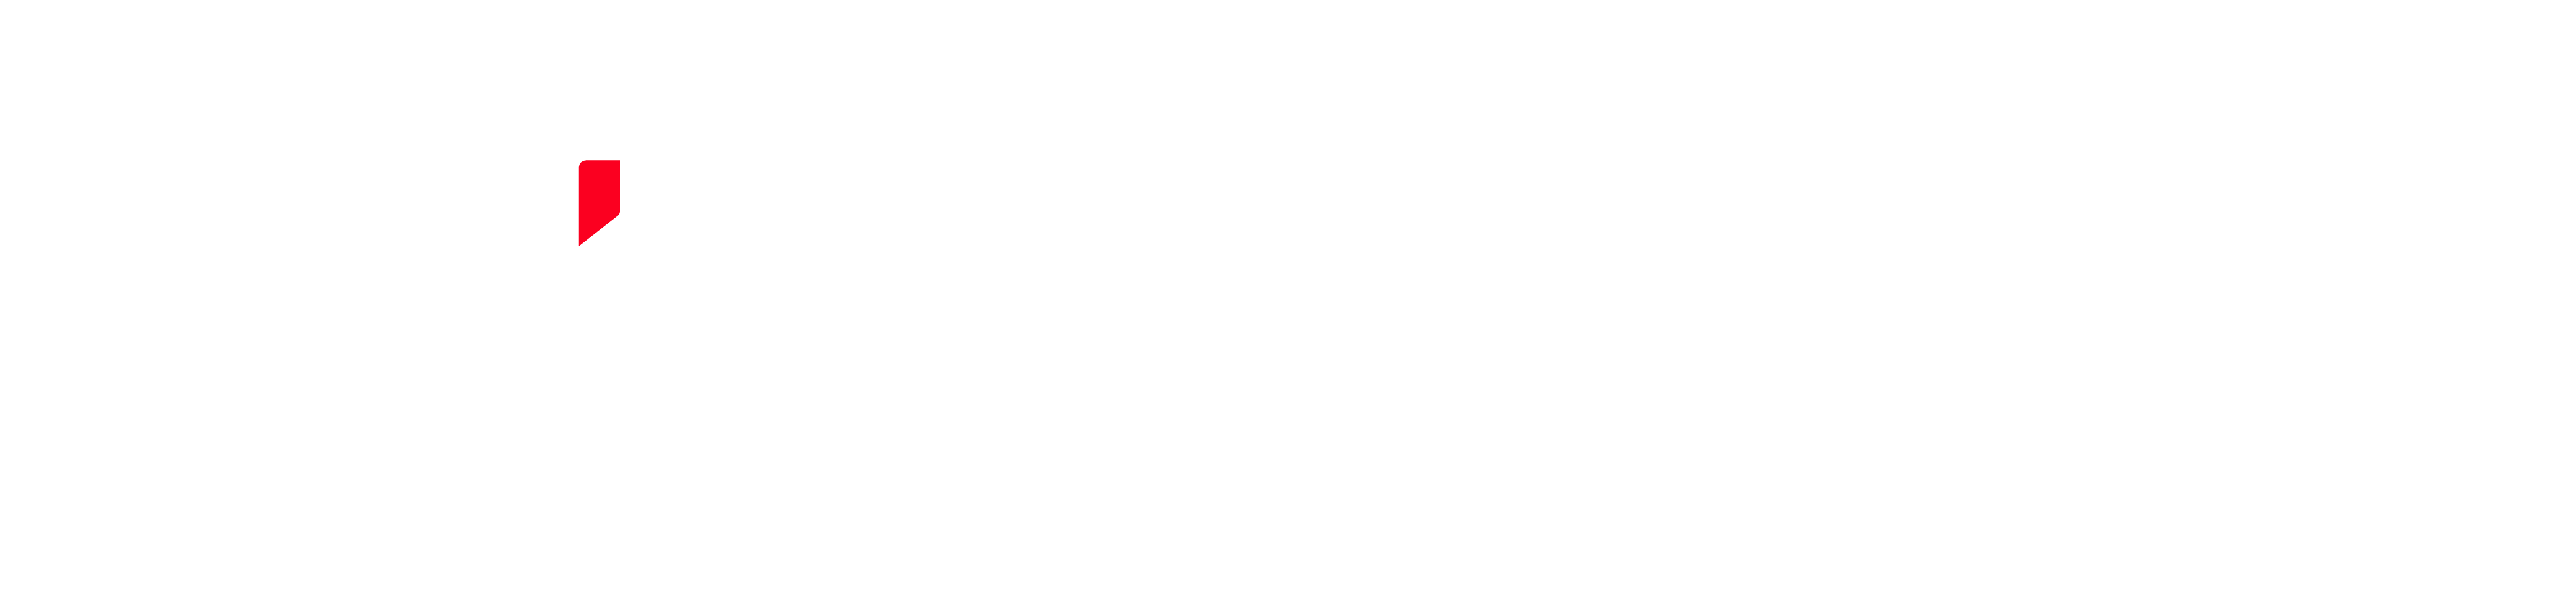 Fujifilm Sonosite Logo